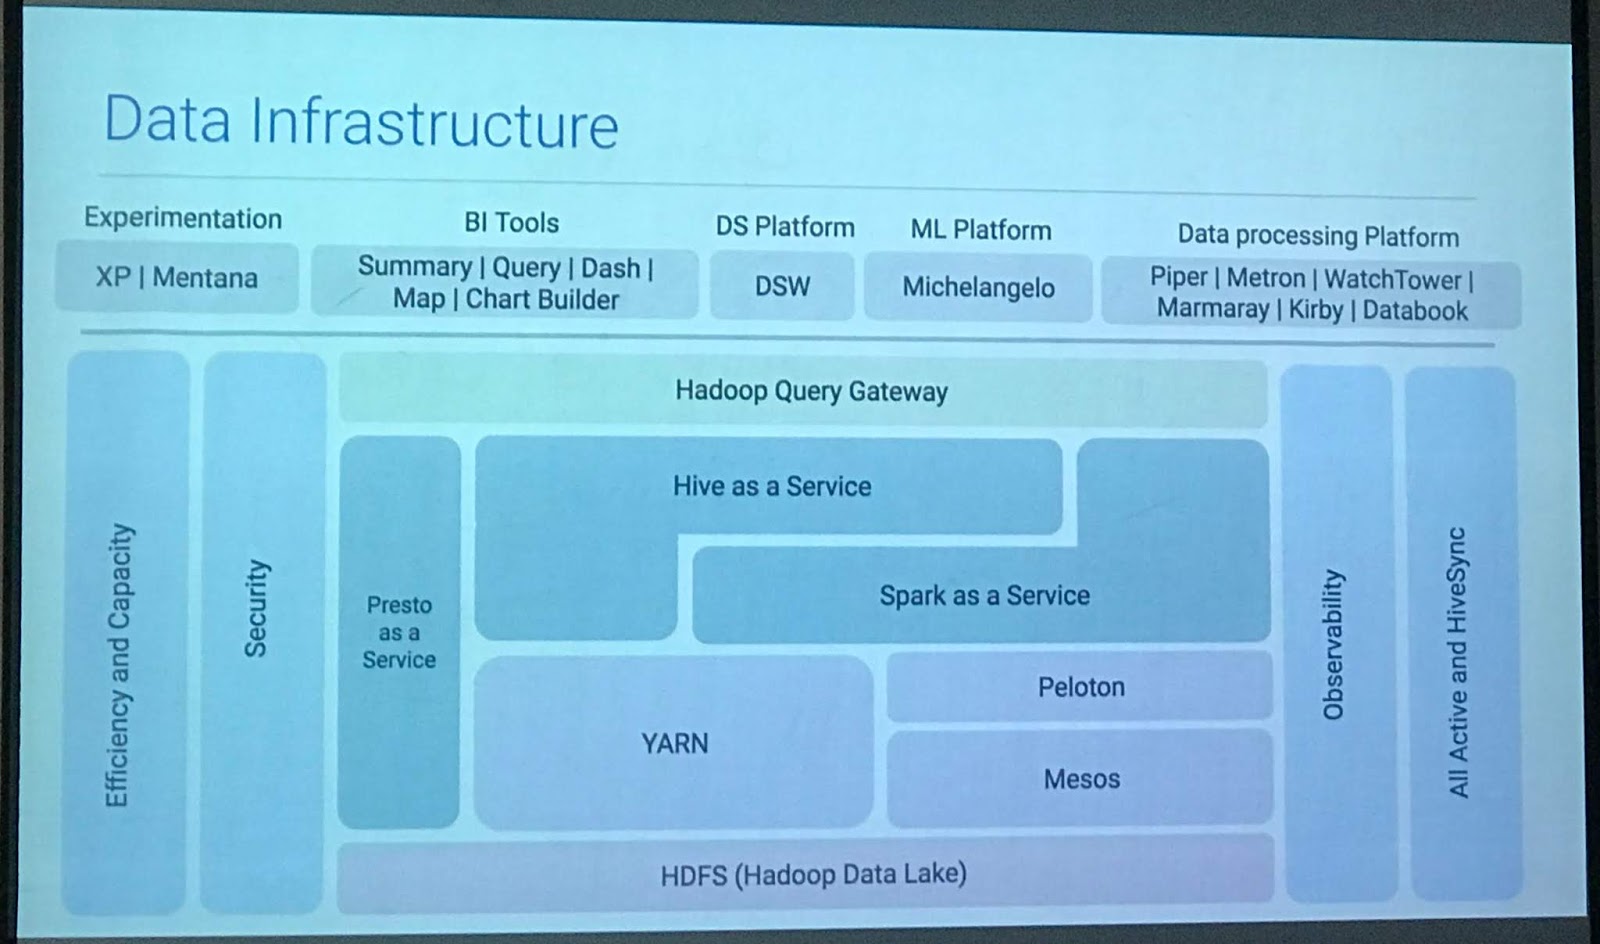 Data infrastructure